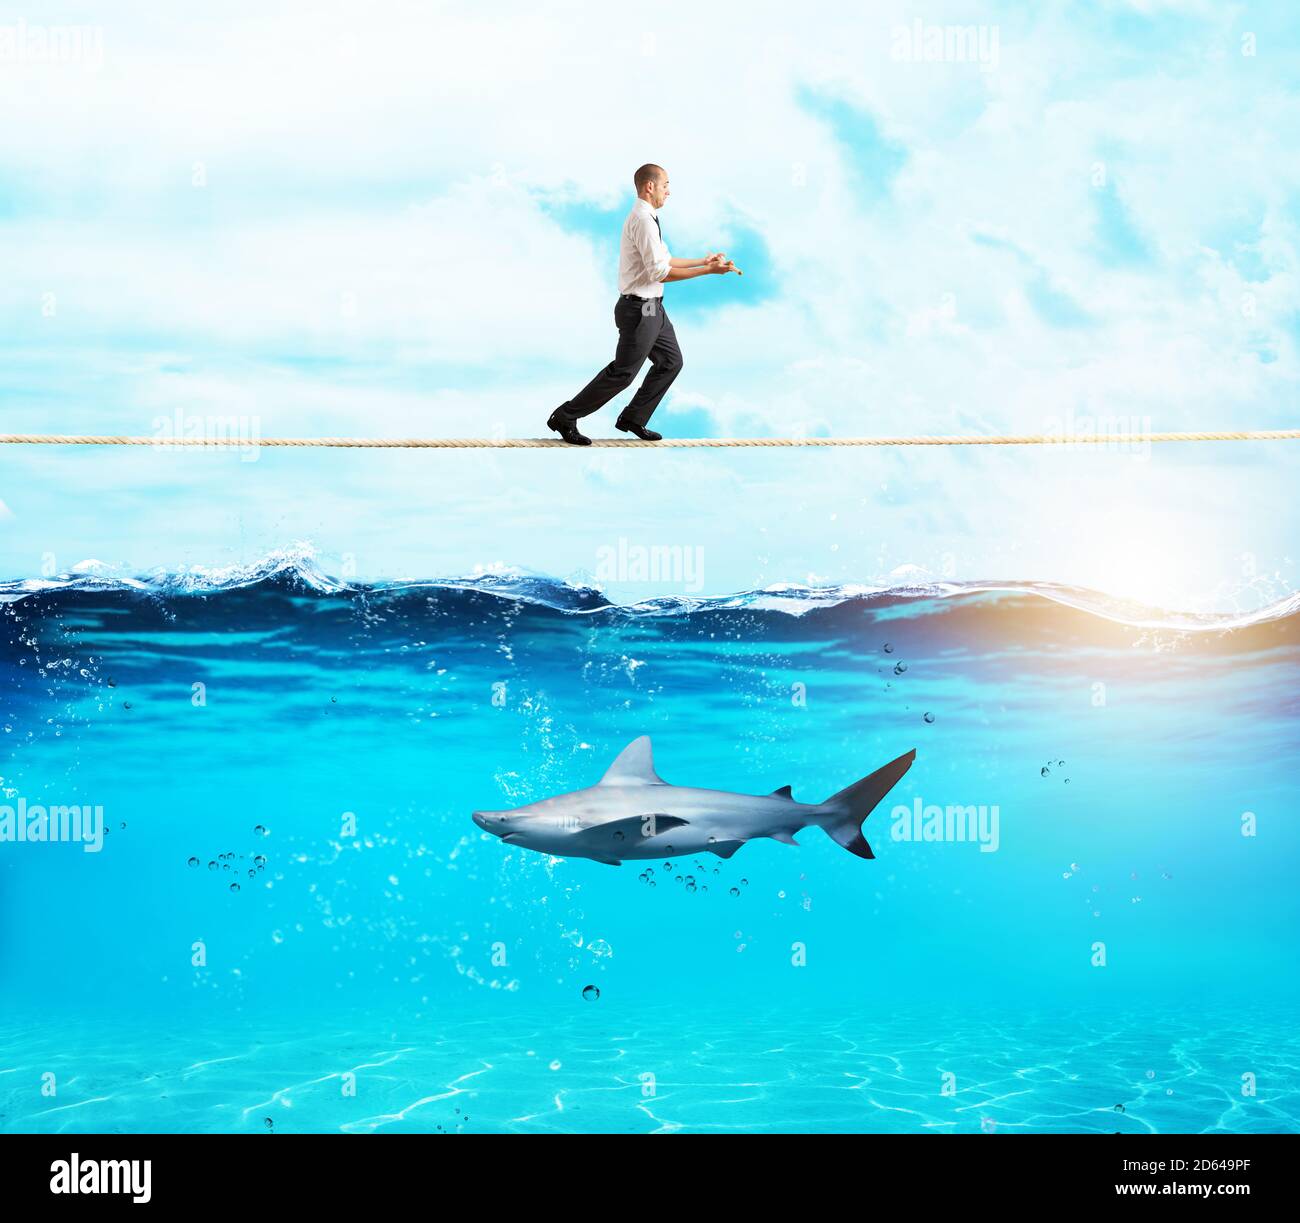 Inquiète homme en équilibre marchant sur une corde au-dessus d'un requin Banque D'Images